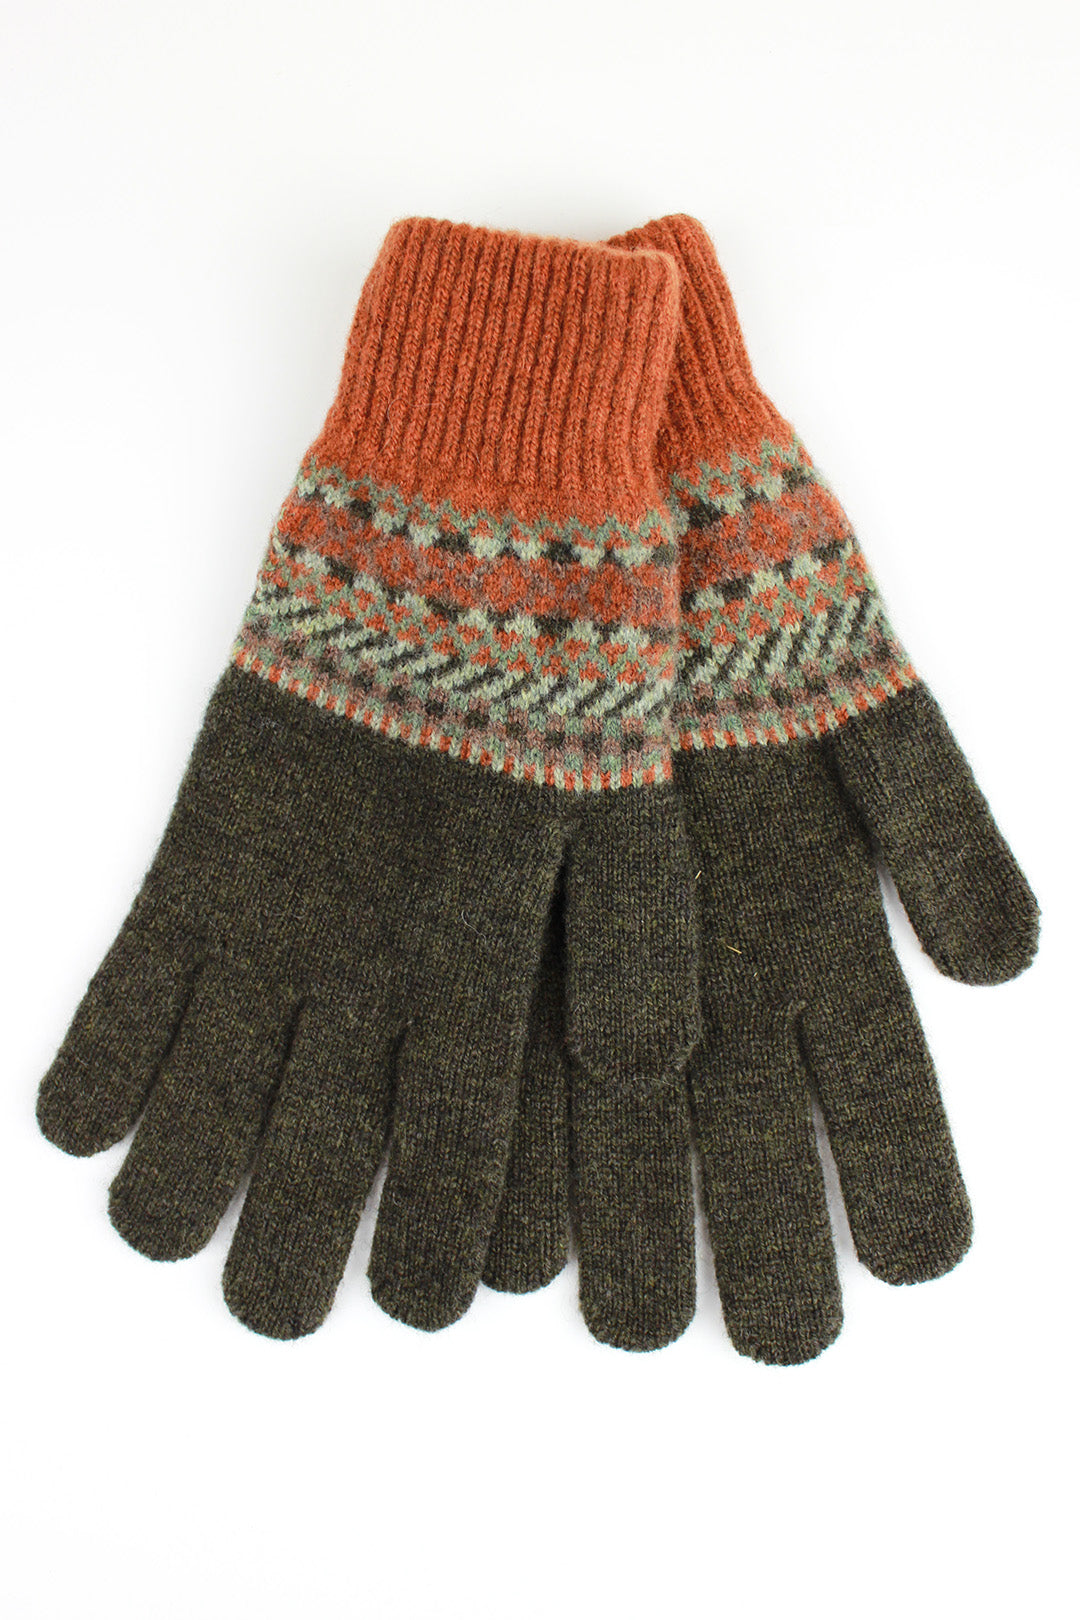 Lochinver Men's Gloves Rust